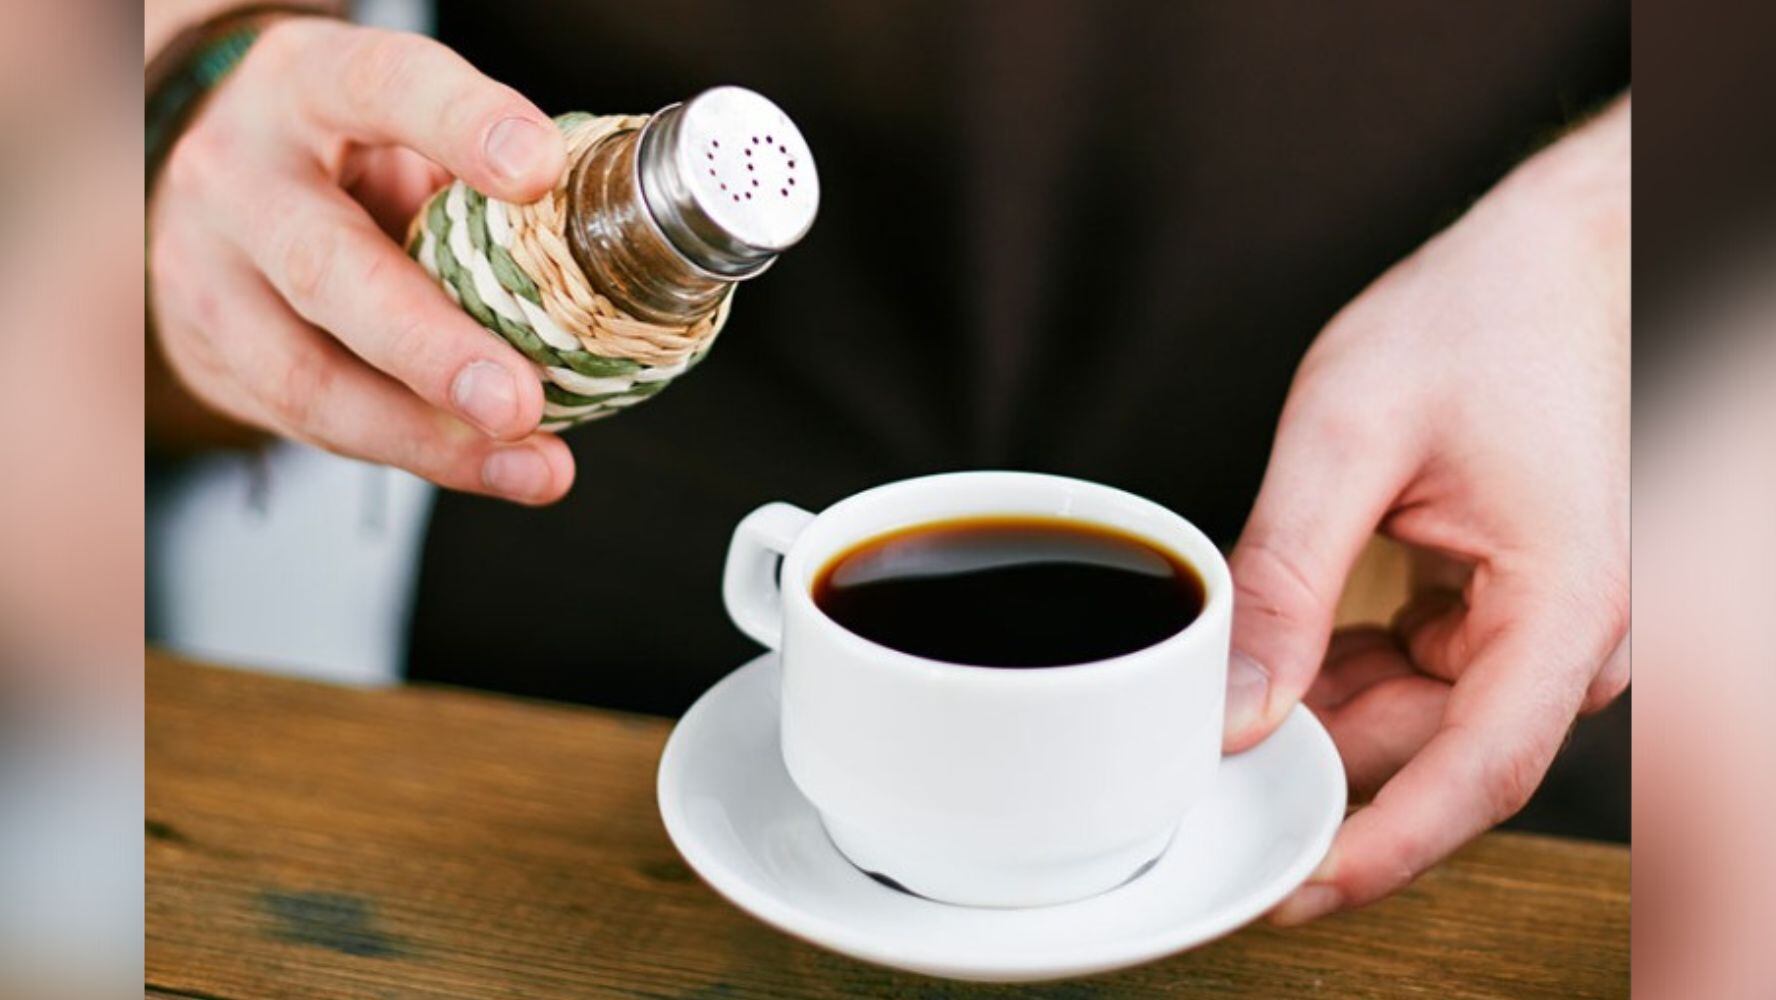 Hay quienes beben café con sal porque consideran que disminuye lo amargo del café. (Foto: Shutterstock)